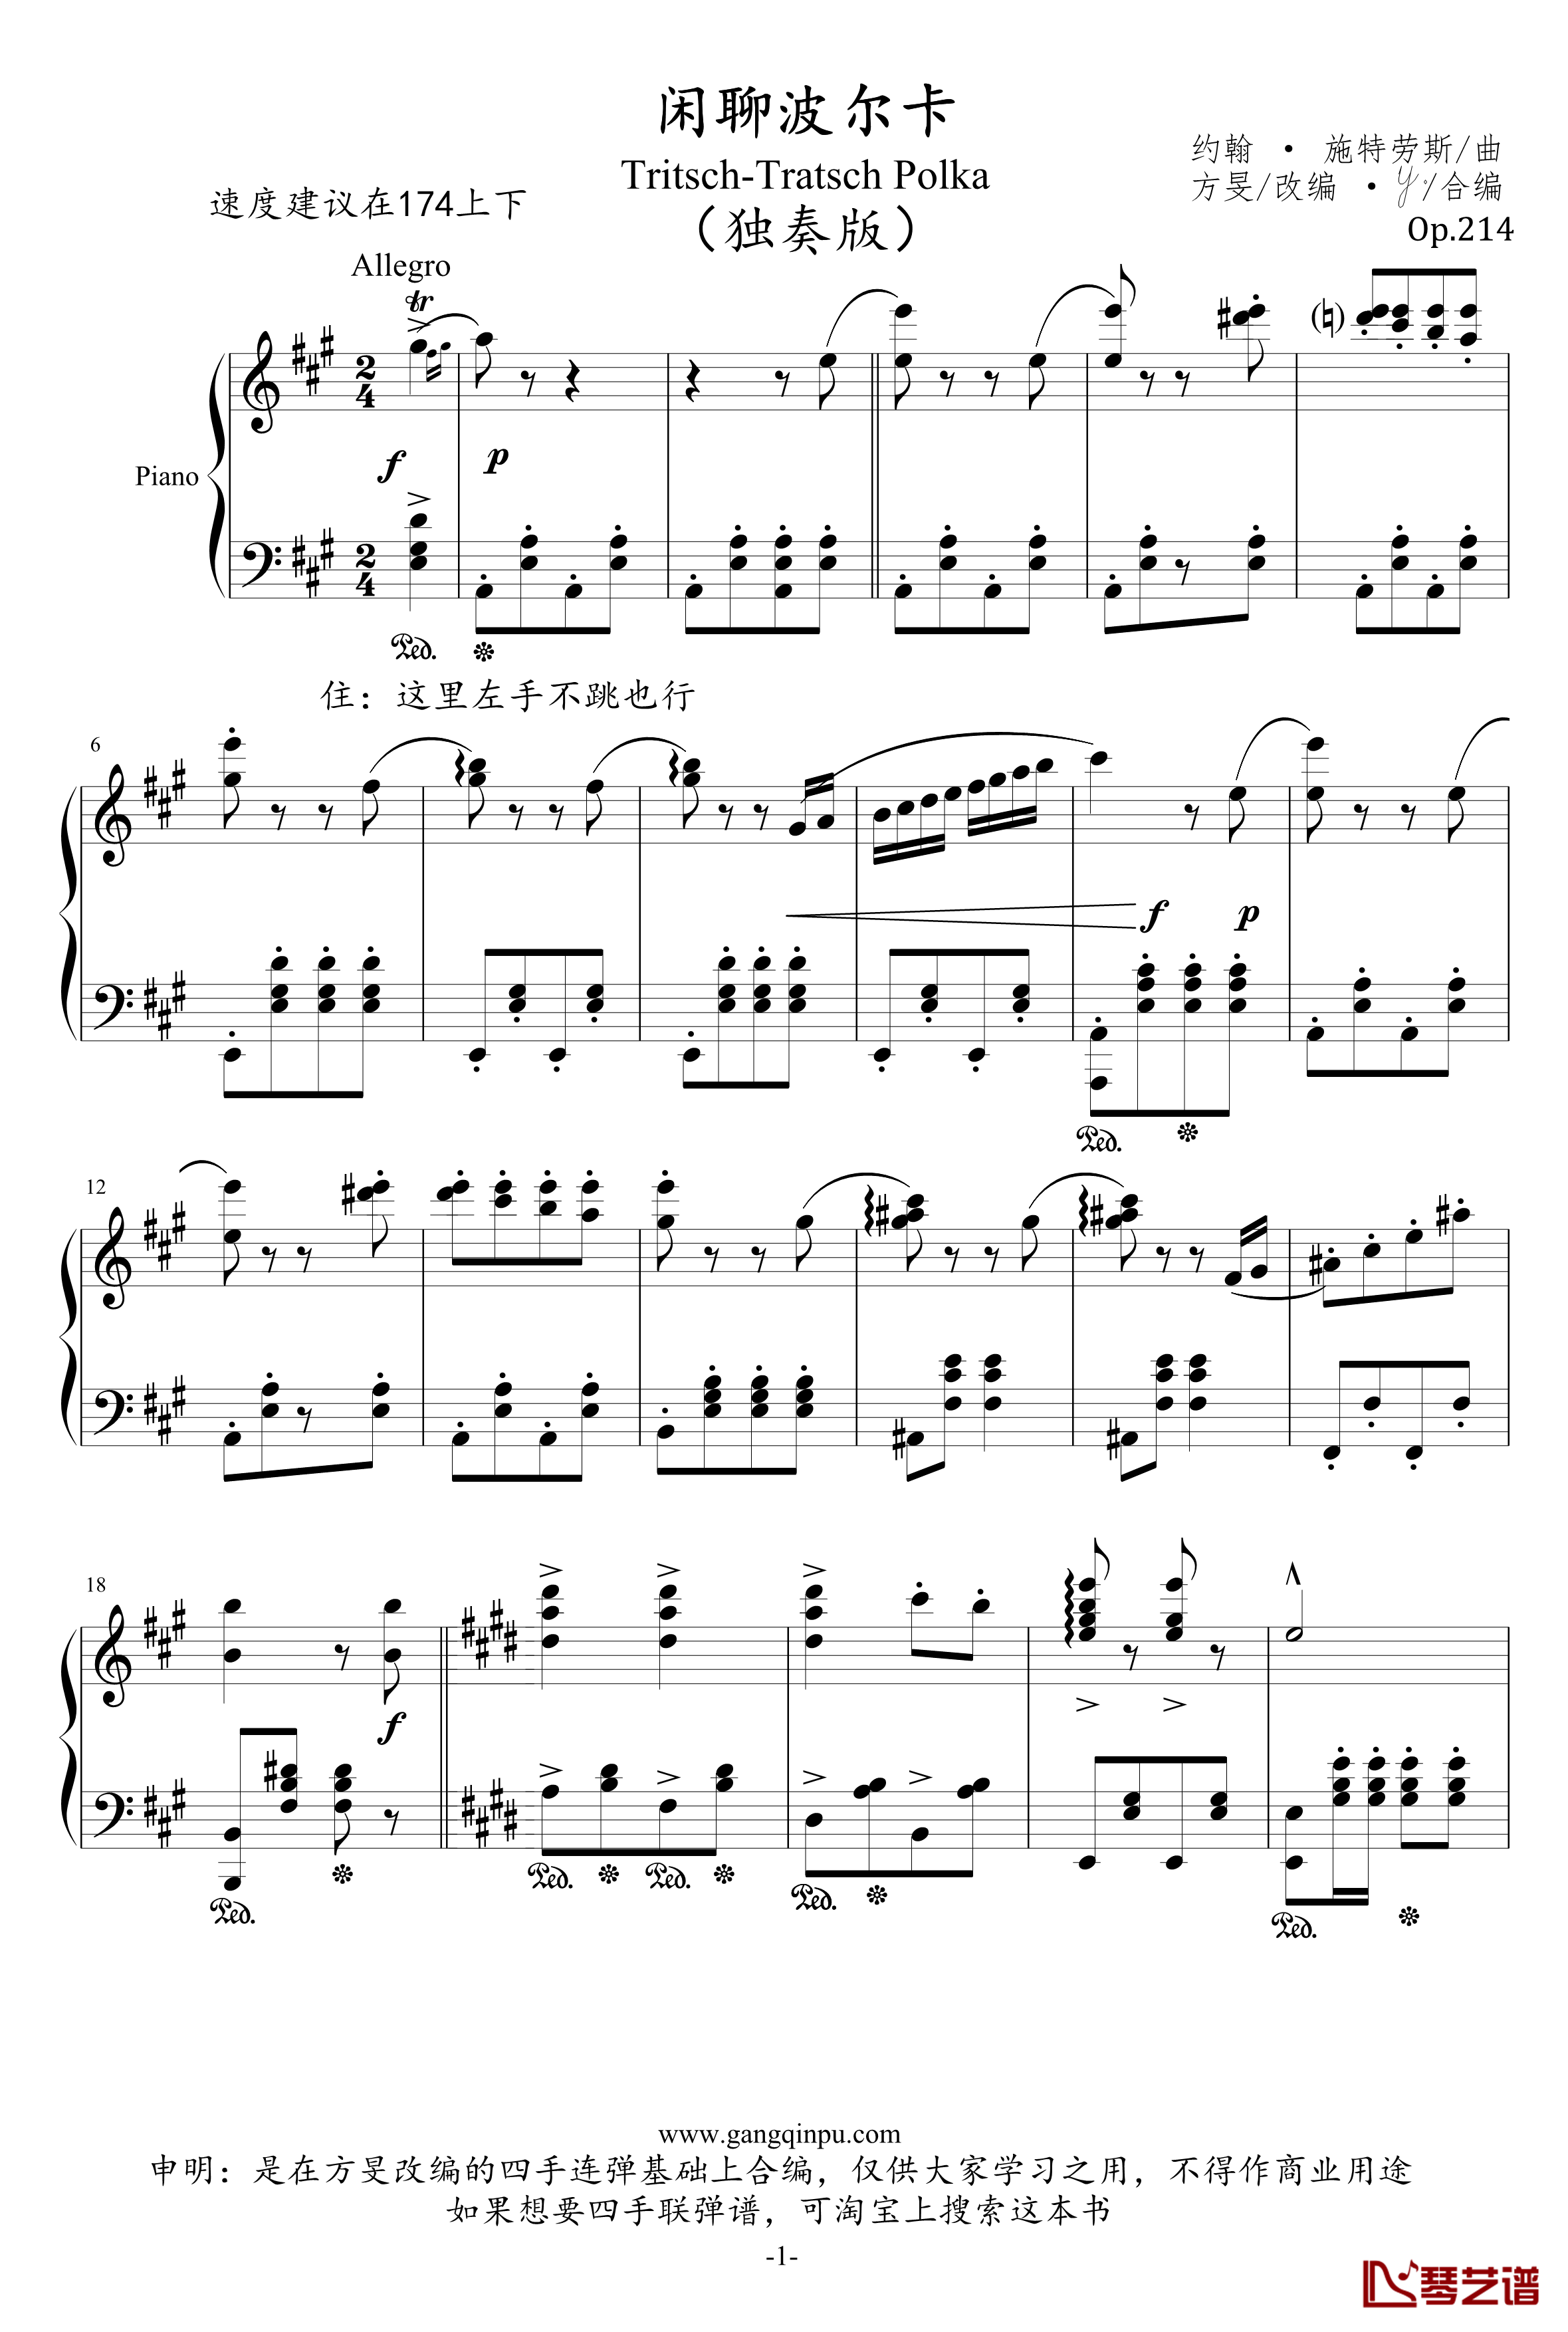 闲聊波尔卡钢琴谱-独奏版-约翰·施特劳斯1